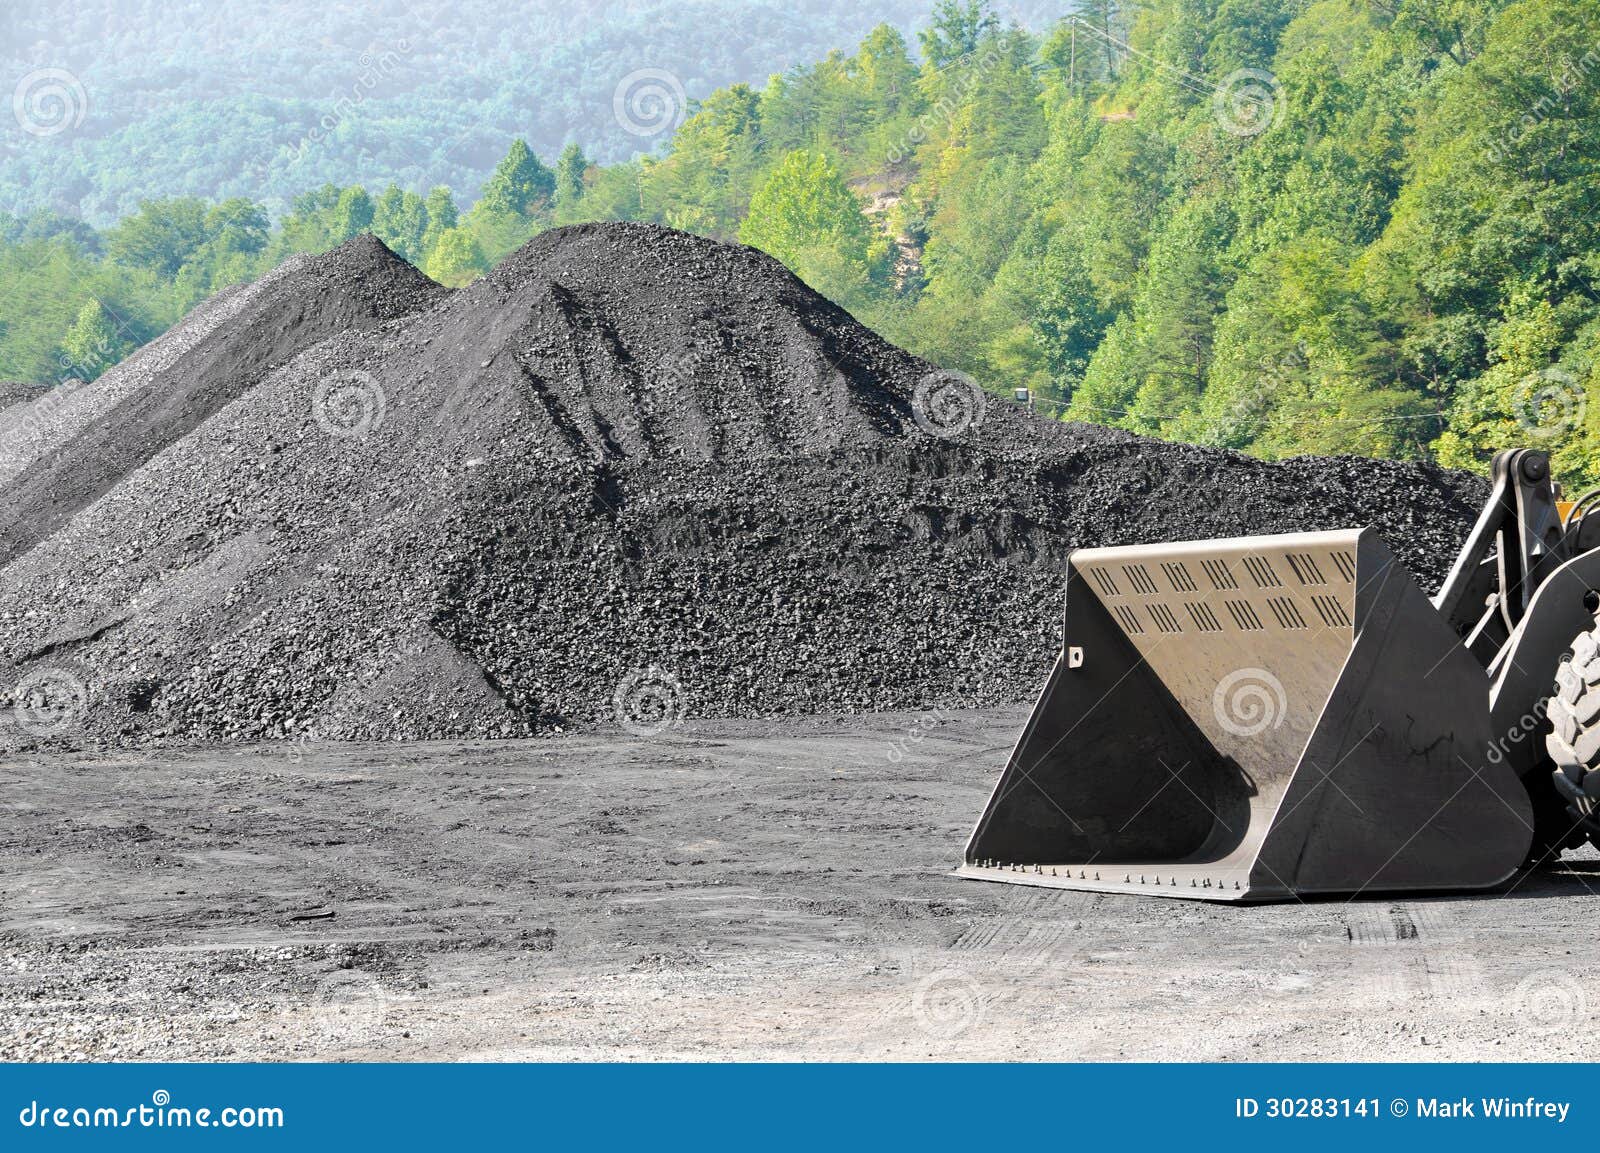 stockpile of coal